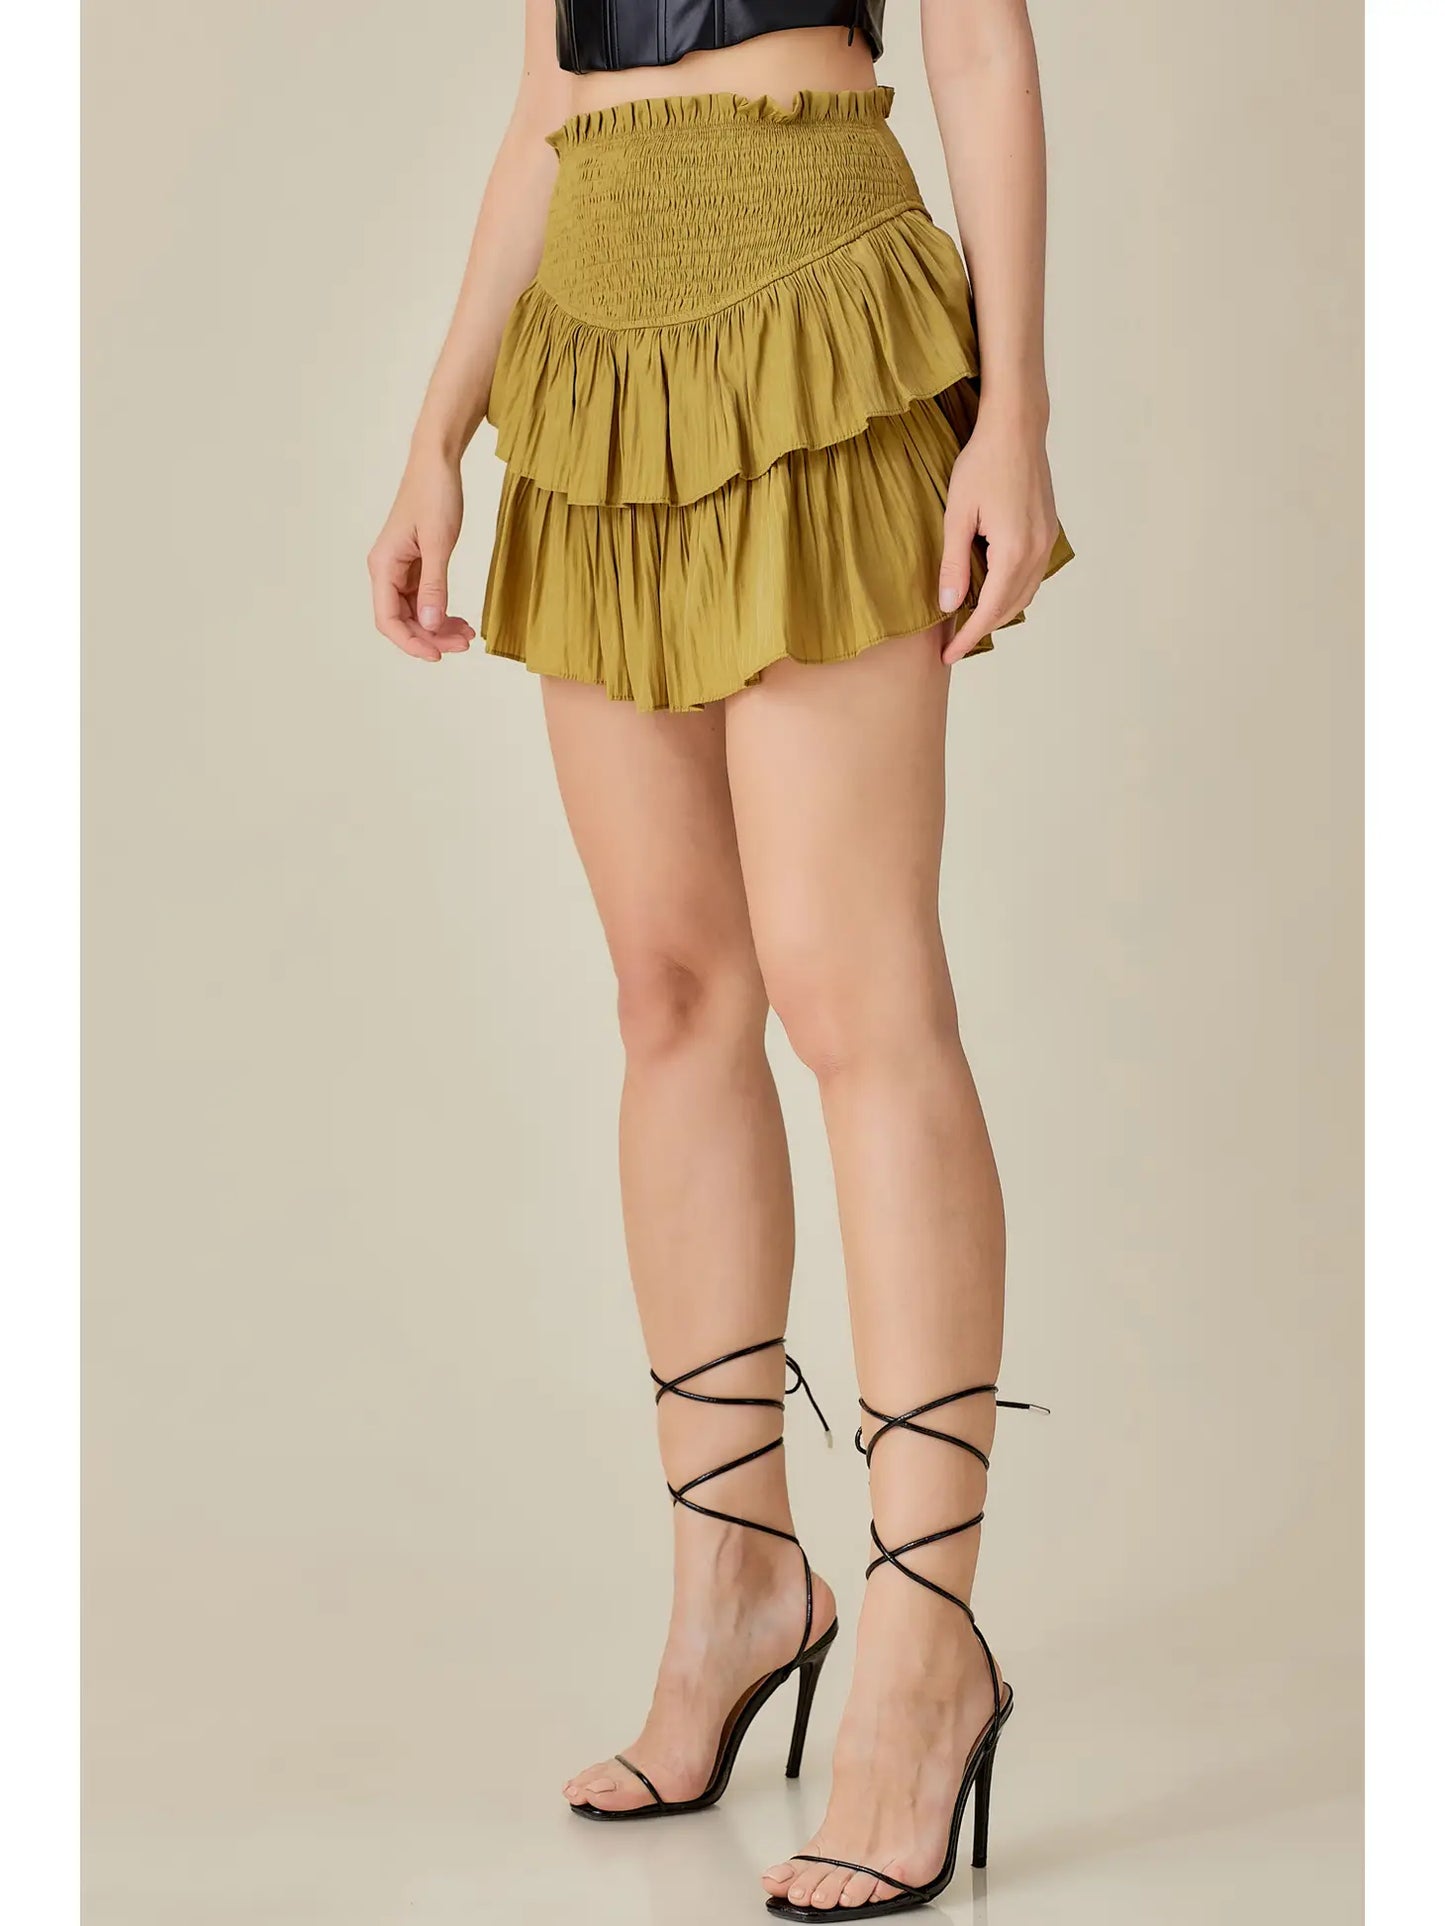 Olivey Smocked Ruffle Skirt With Shorts - MS